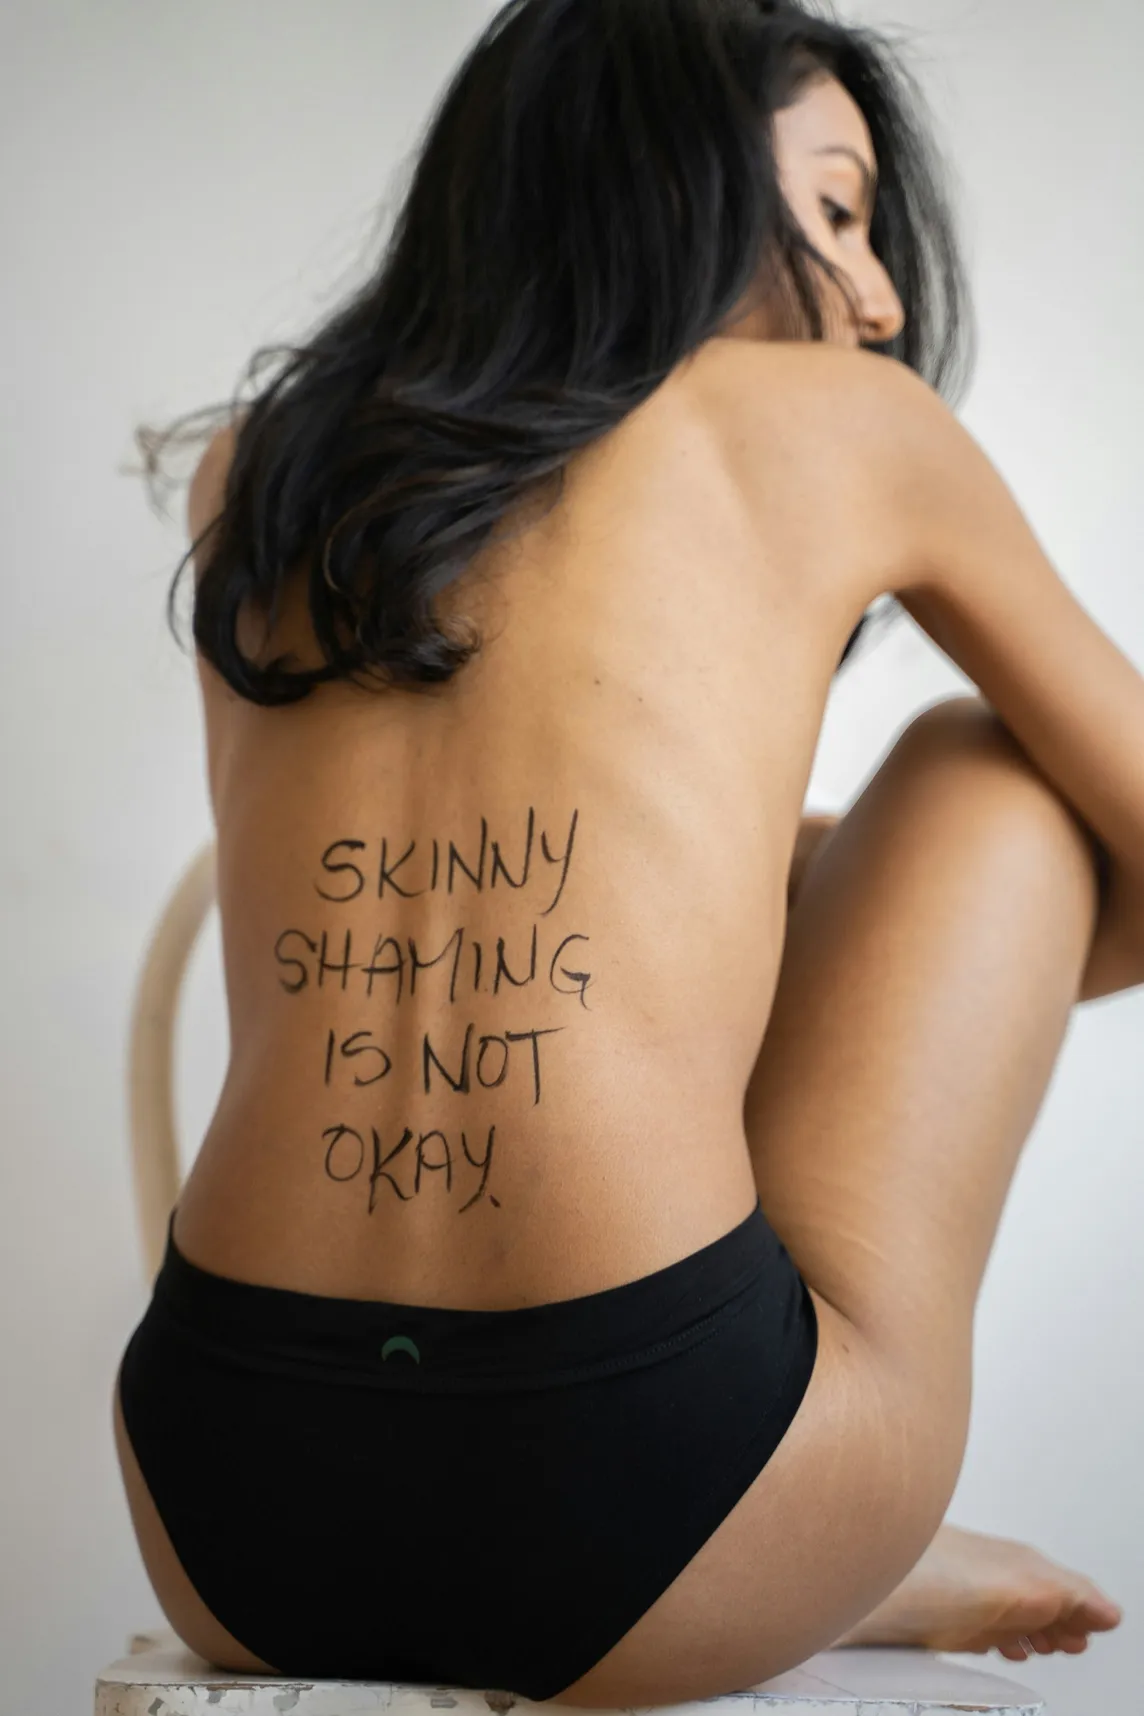 The Stigma of ‘Skinny’